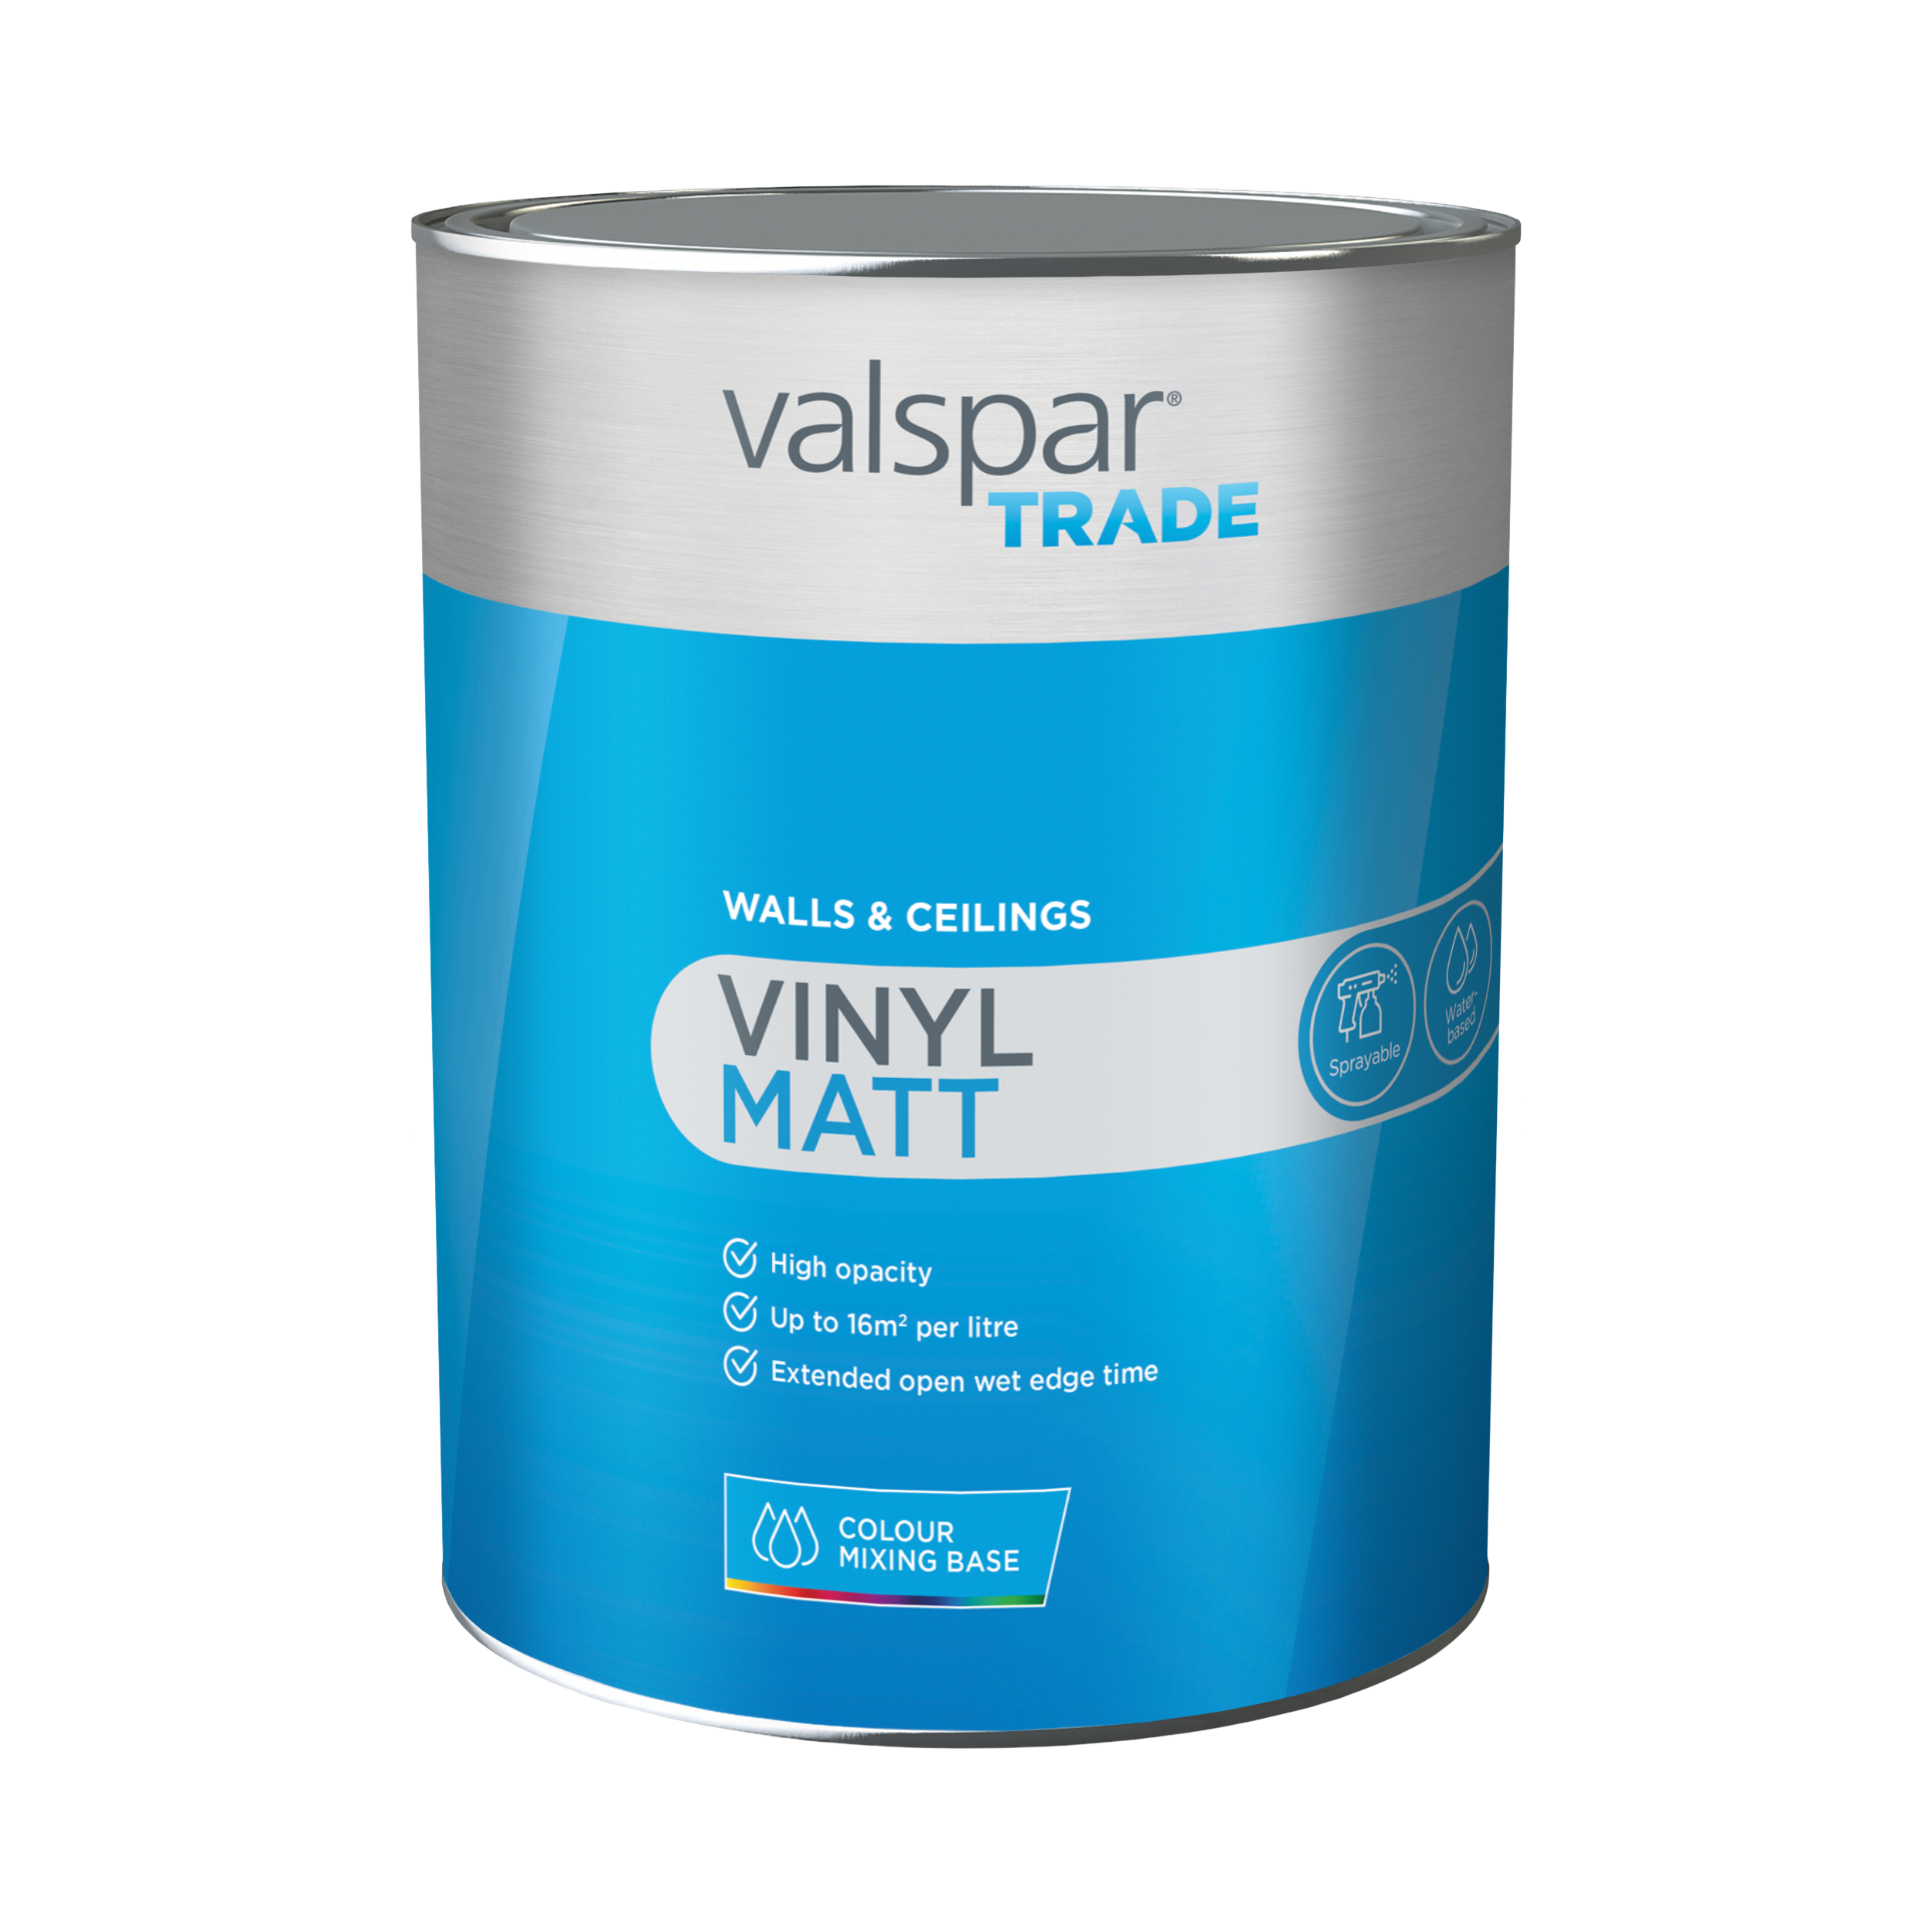 Valspar® Trade Vinyl Matt Tintable